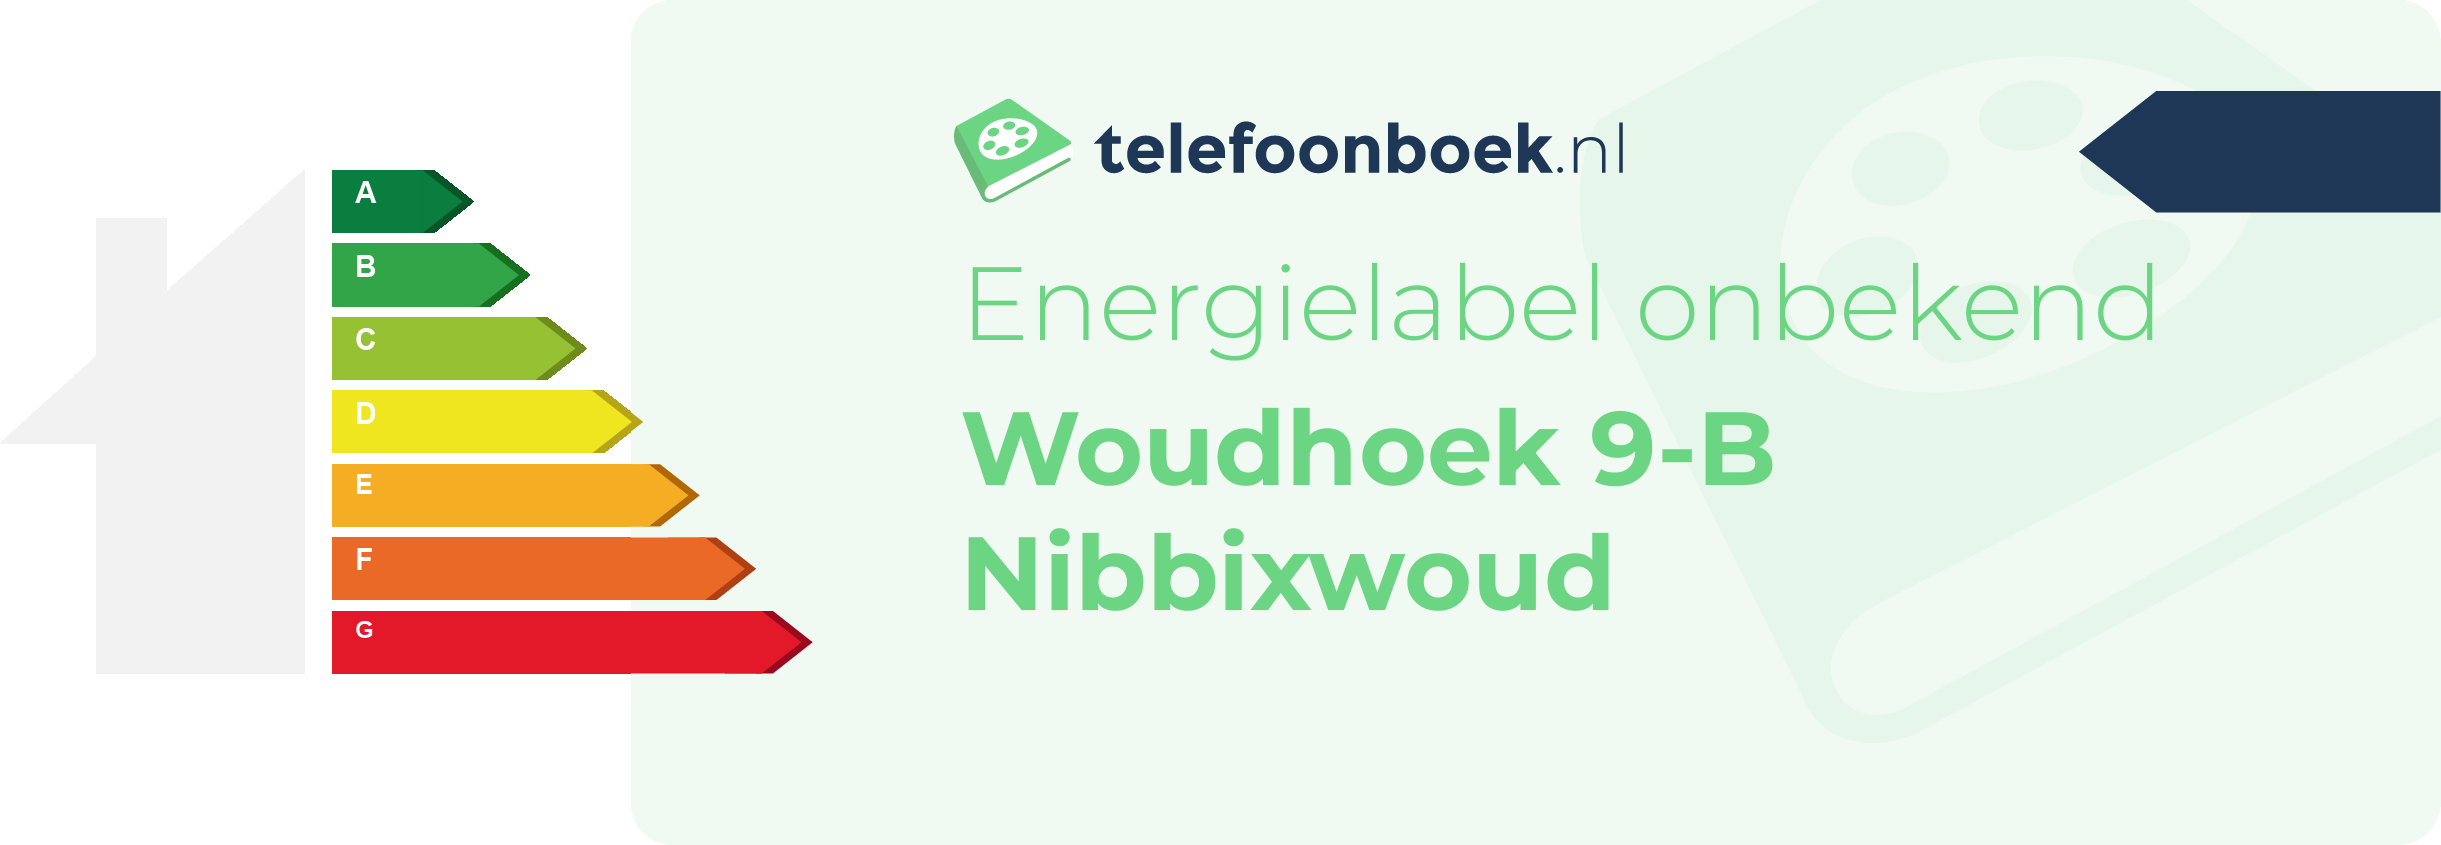 Energielabel Woudhoek 9-B Nibbixwoud